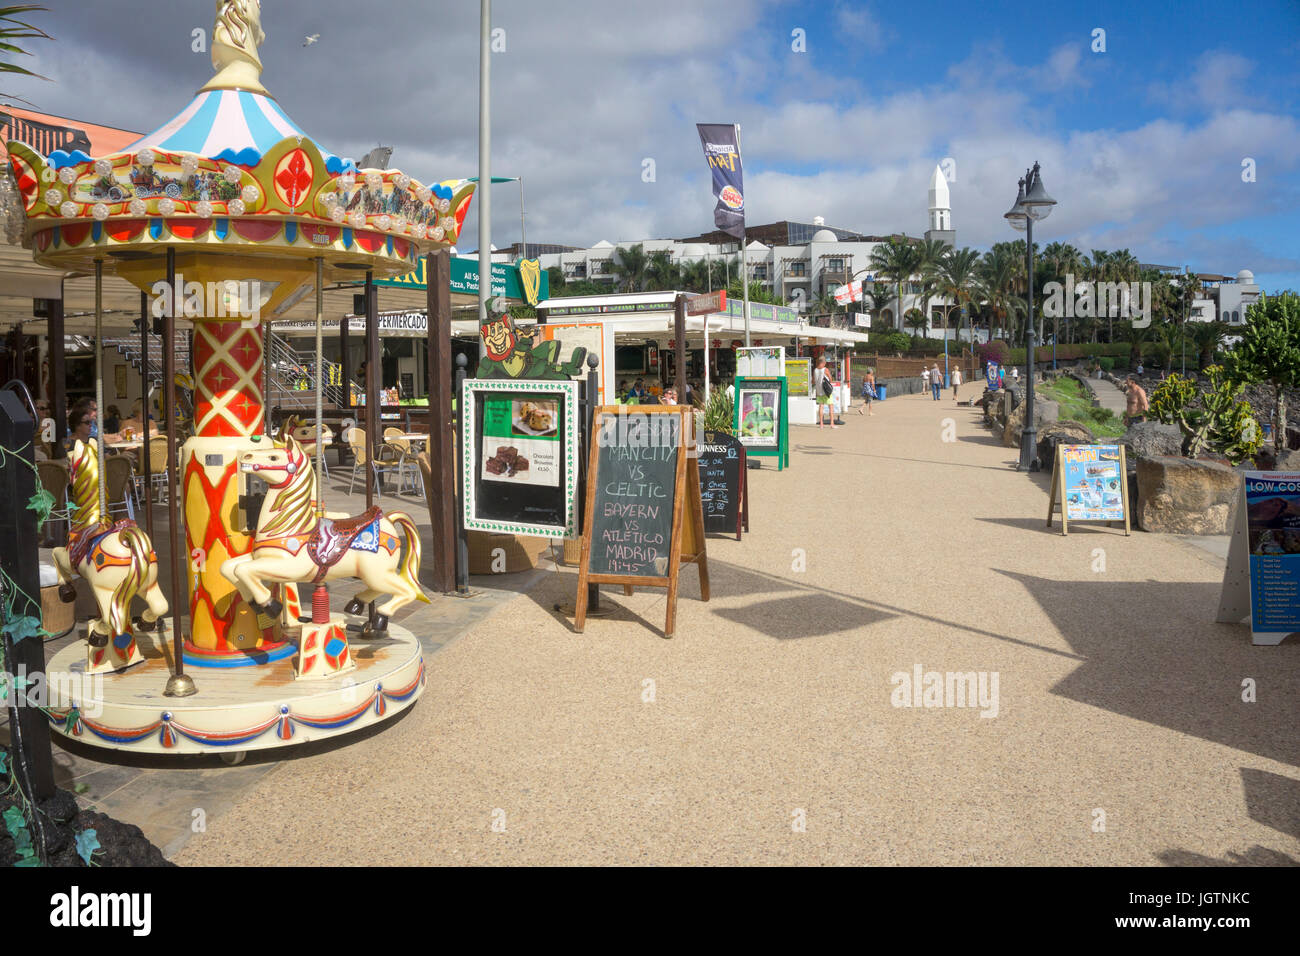 Kinder- Merry-go-round und Geschäfte an der Promenade, Strand Playa Dorada, Playa Blanca, Insel Lanzarote, Kanarische Inseln, Spanien, Europa Stockfoto